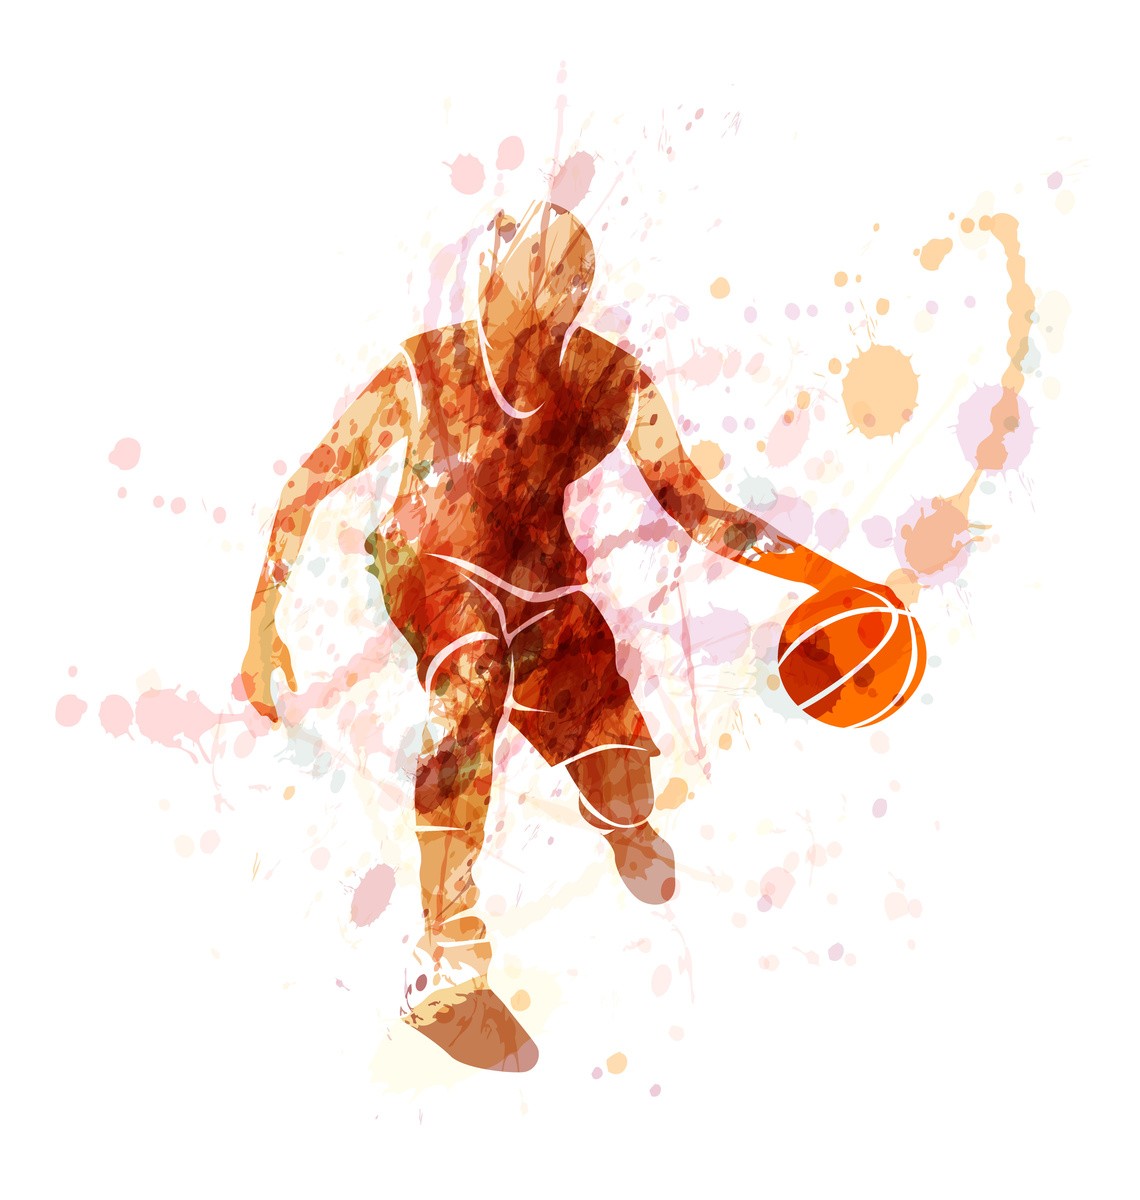 Ταπετσαρία Sports - Αθλητισμός 23 Μπασκετμπολίστας